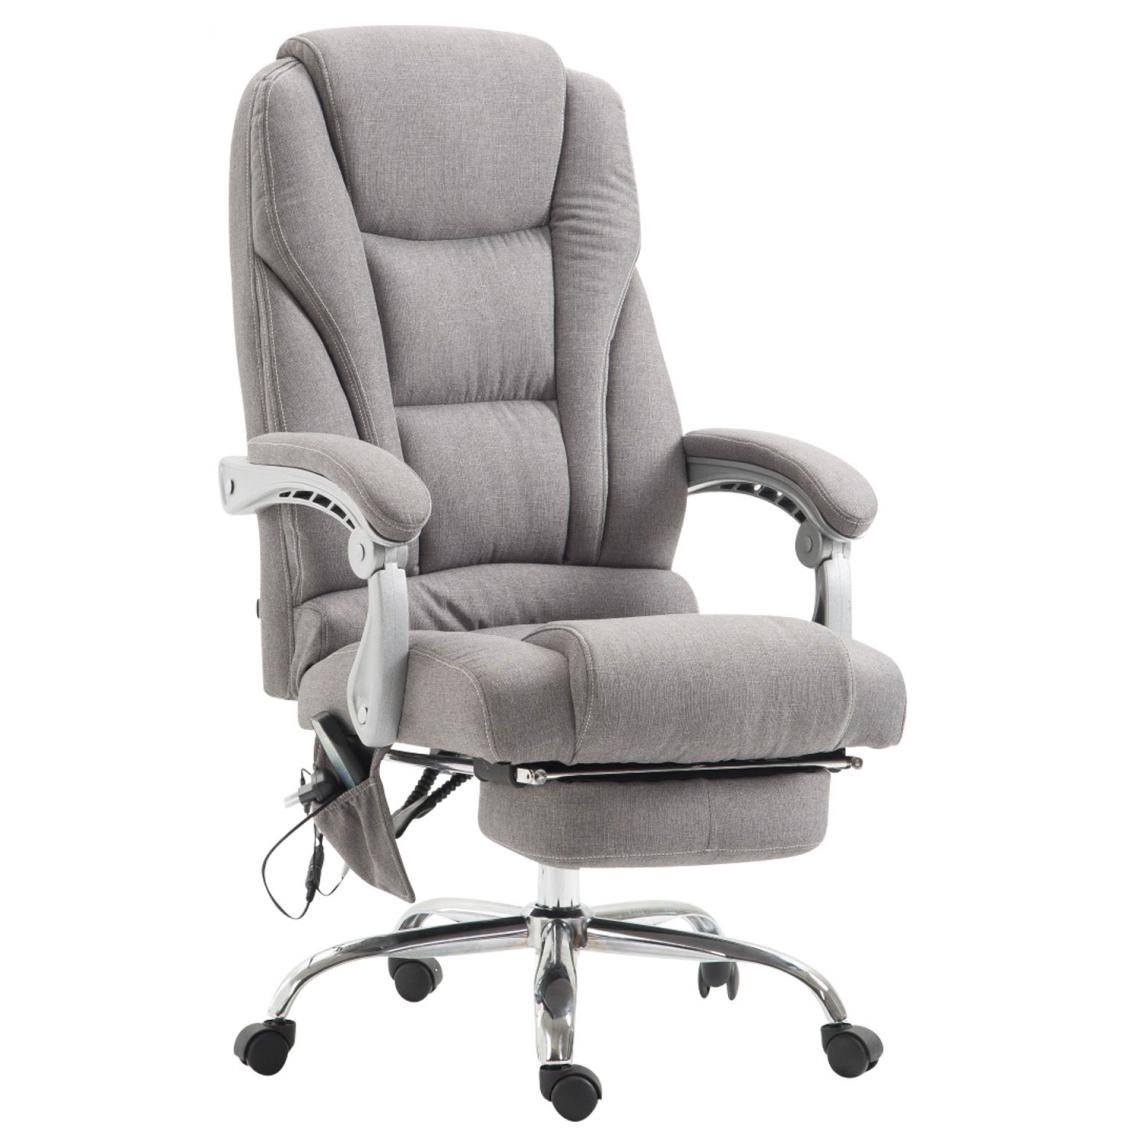 Icaverne - Splendide Chaise de bureau categorie Quito tissu avec fonction massage couleur gris - Chaises